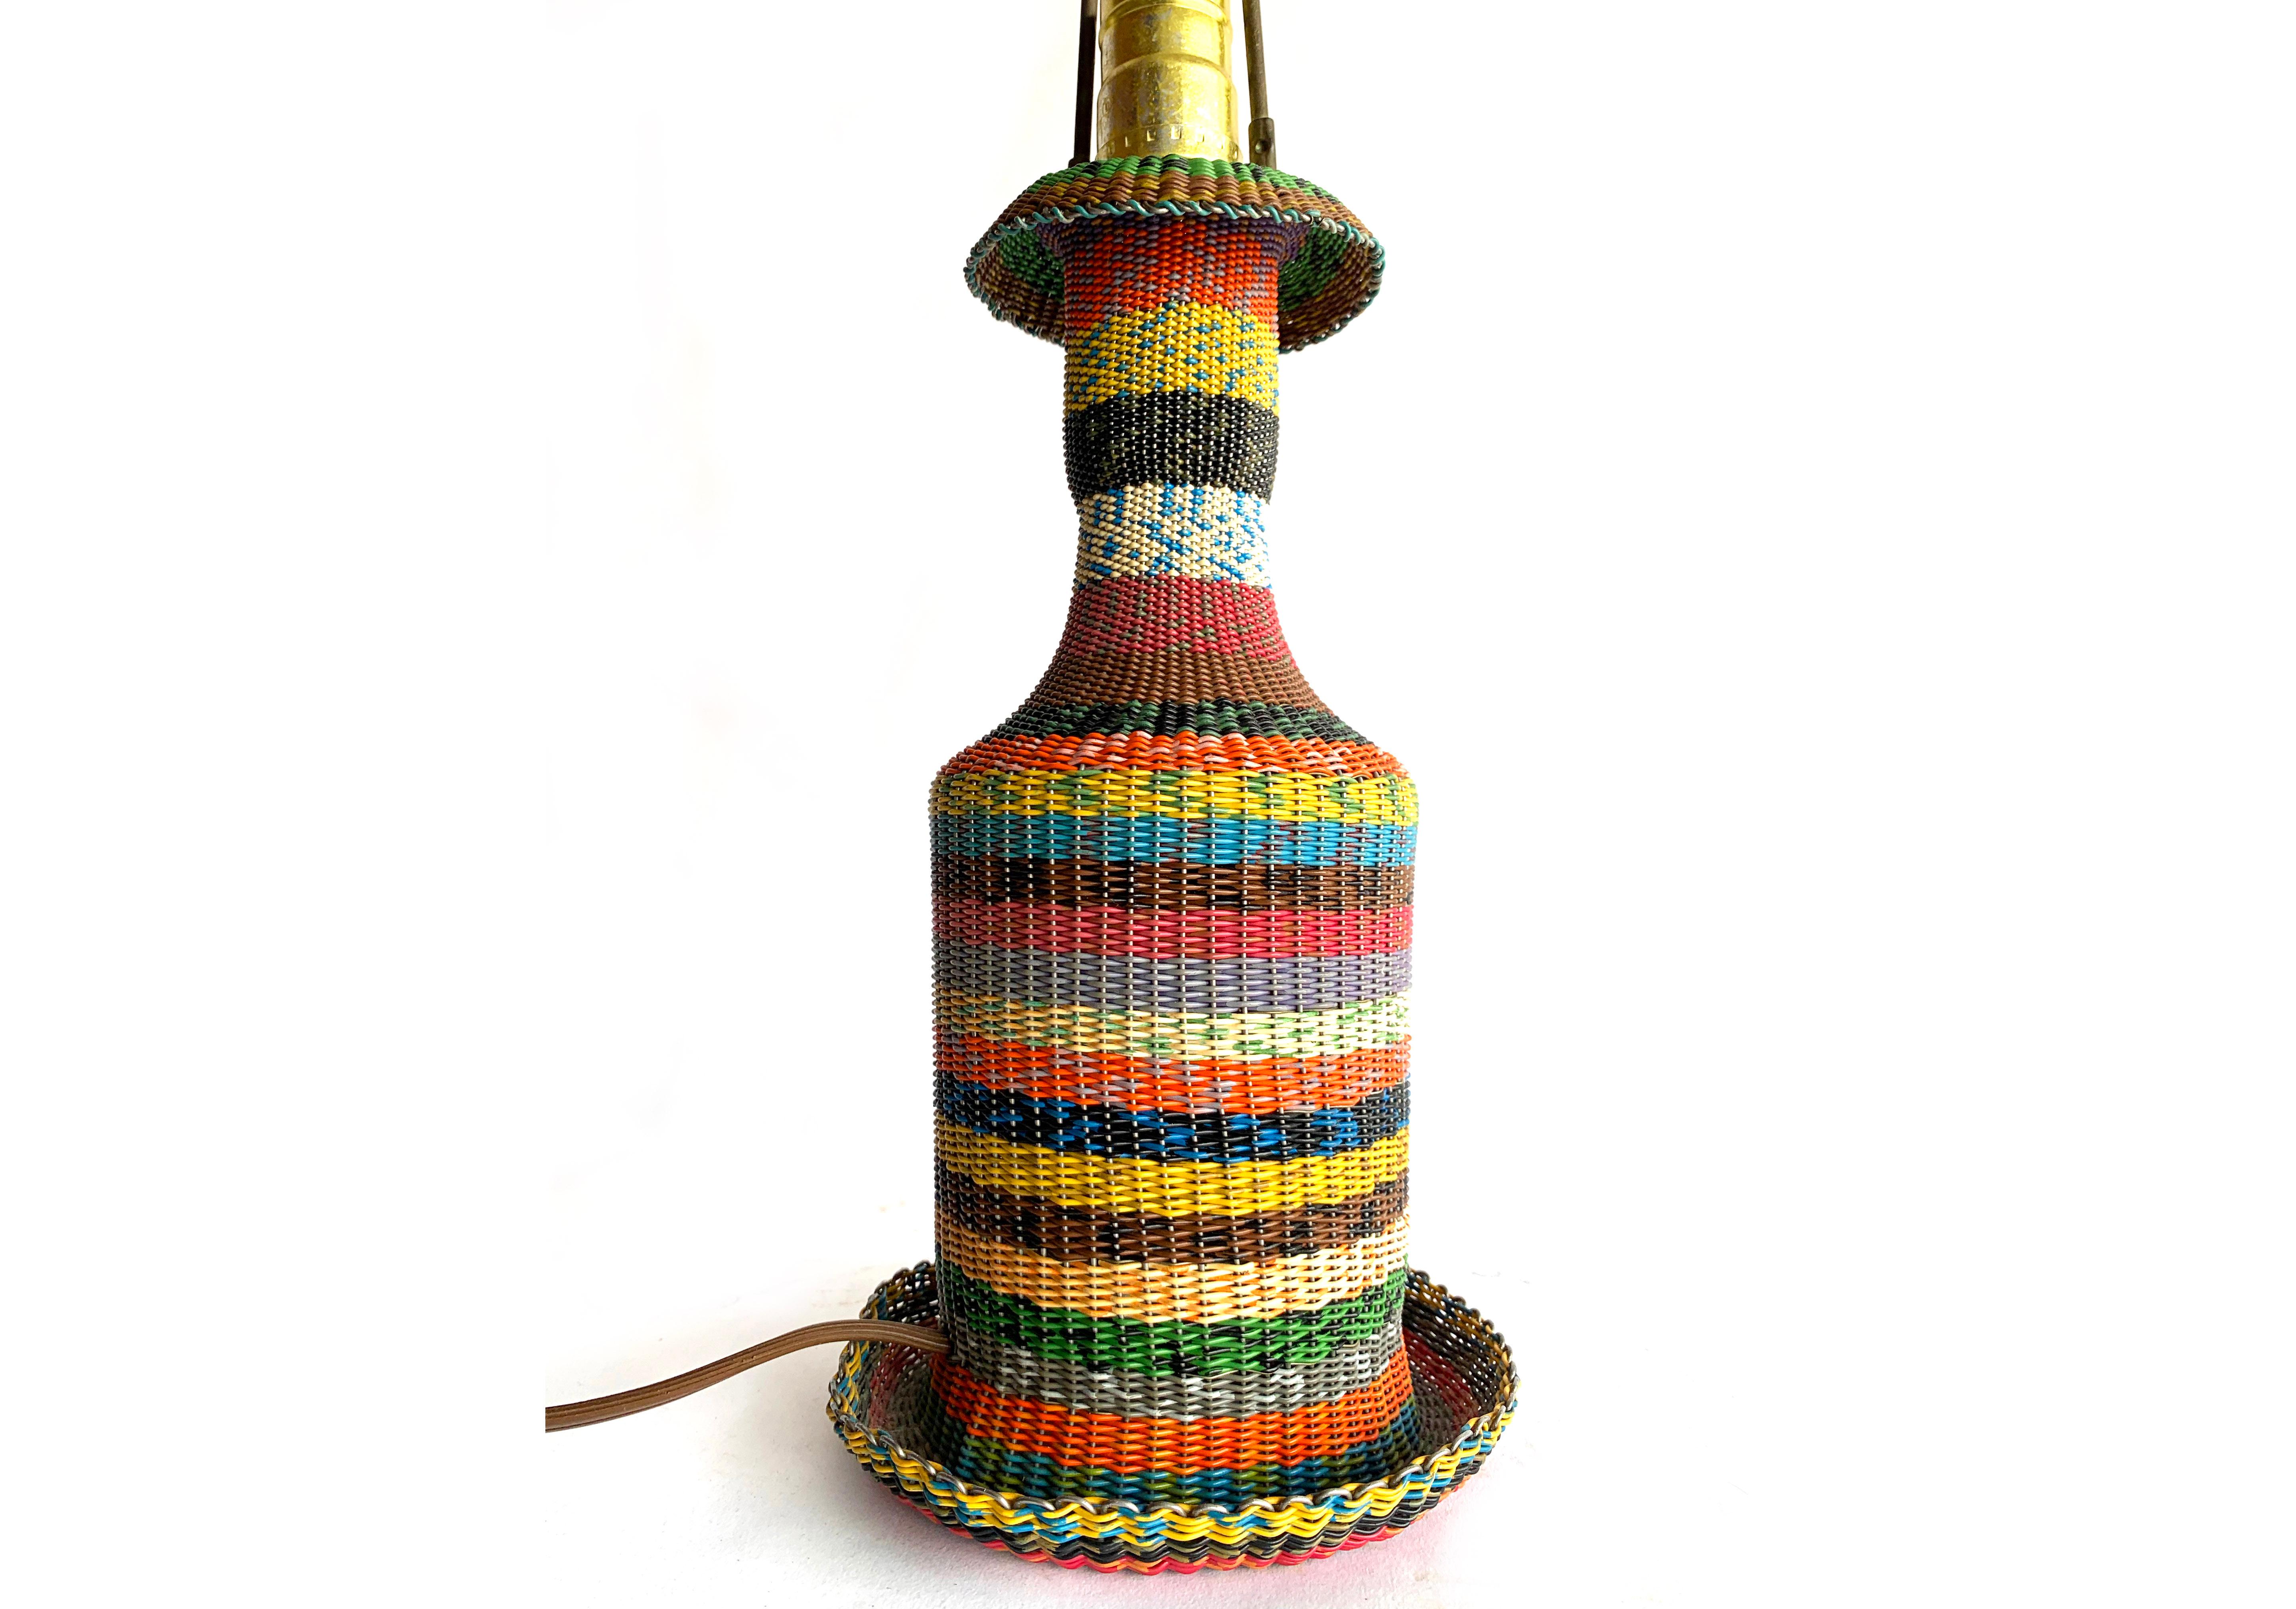 Charmante lampe de table vintage en forme de bouteille en verre recouverte de fil métallique tressé. Le motif et la technique sont basés sur le tressage traditionnel de paniers et sont considérés comme des  pièce unique d'art populaire. Le tissage